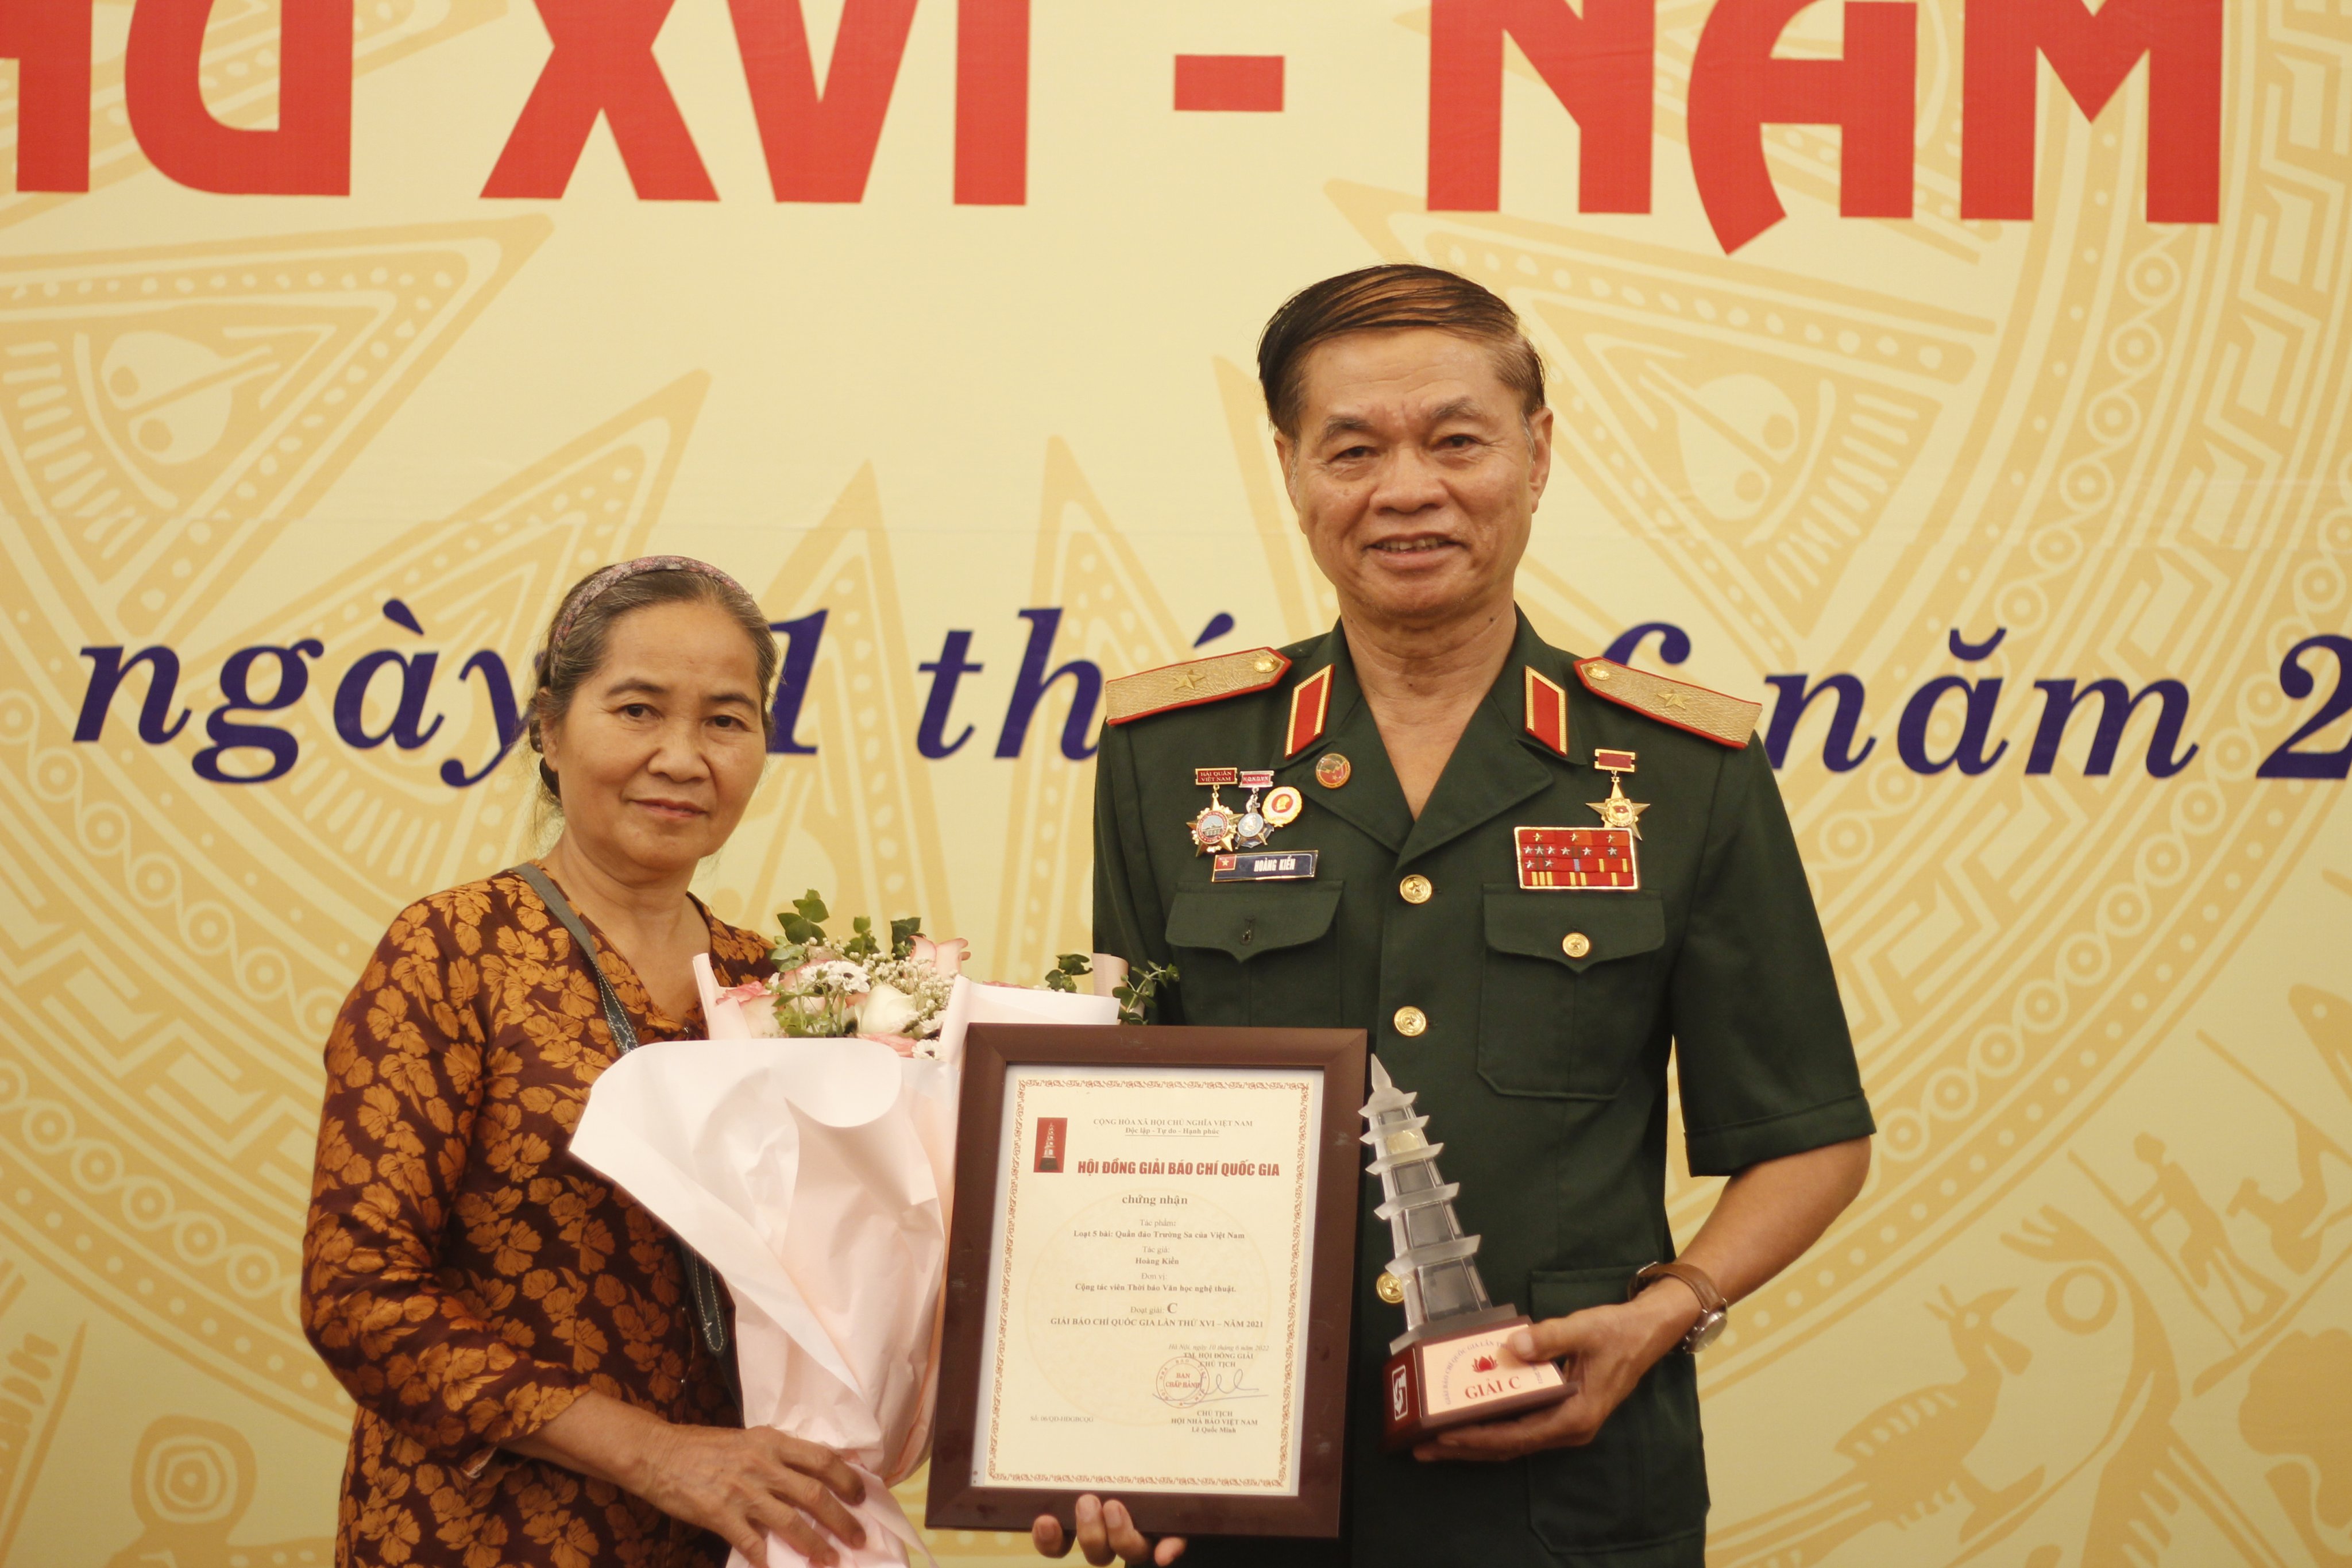 Thiếu tướng Hoàng Kiền: “Nhận giải Báo chí Quốc gia là niềm tự hào cho toàn thể đội ngũ cán bộ chiến sĩ Trường Sa” - 2